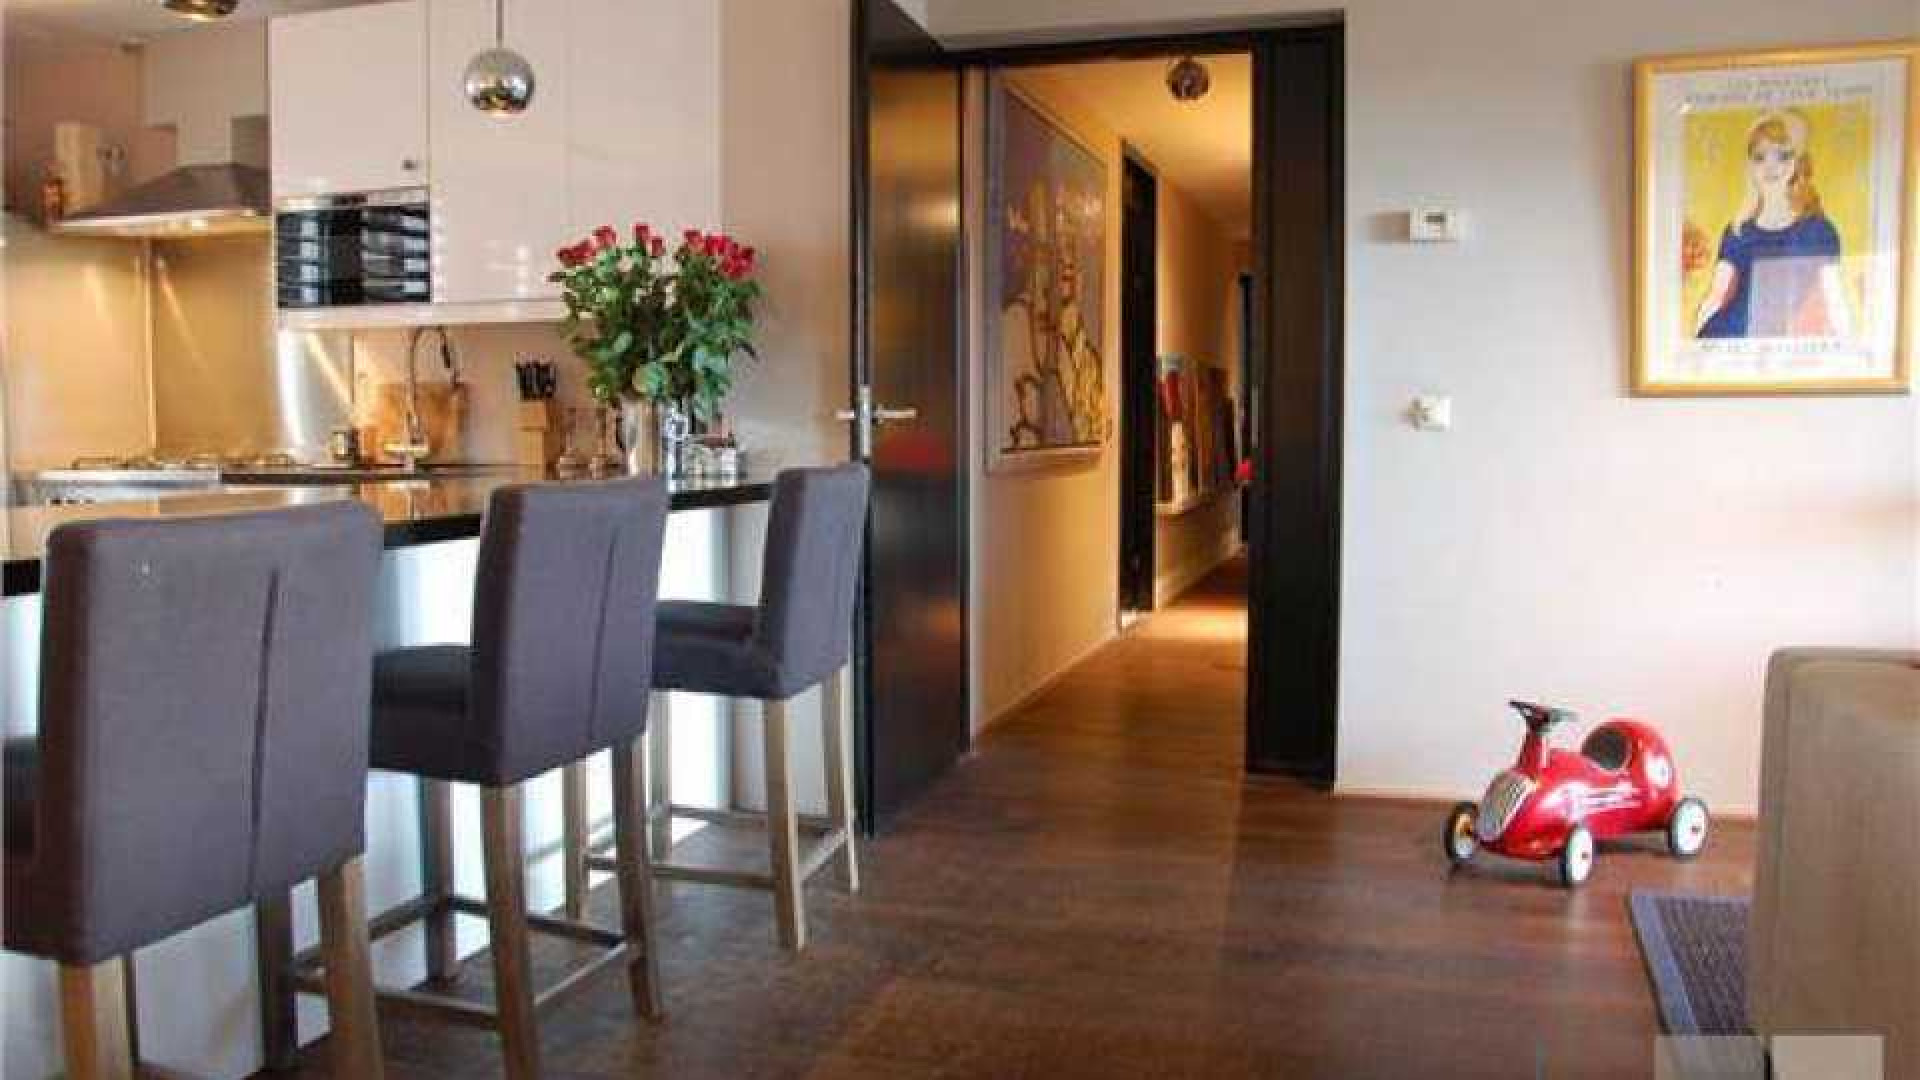 PSV voetballer Marco van Ginkel eigenaar van luxe appartement in Amsterdam. Zie foto's 4